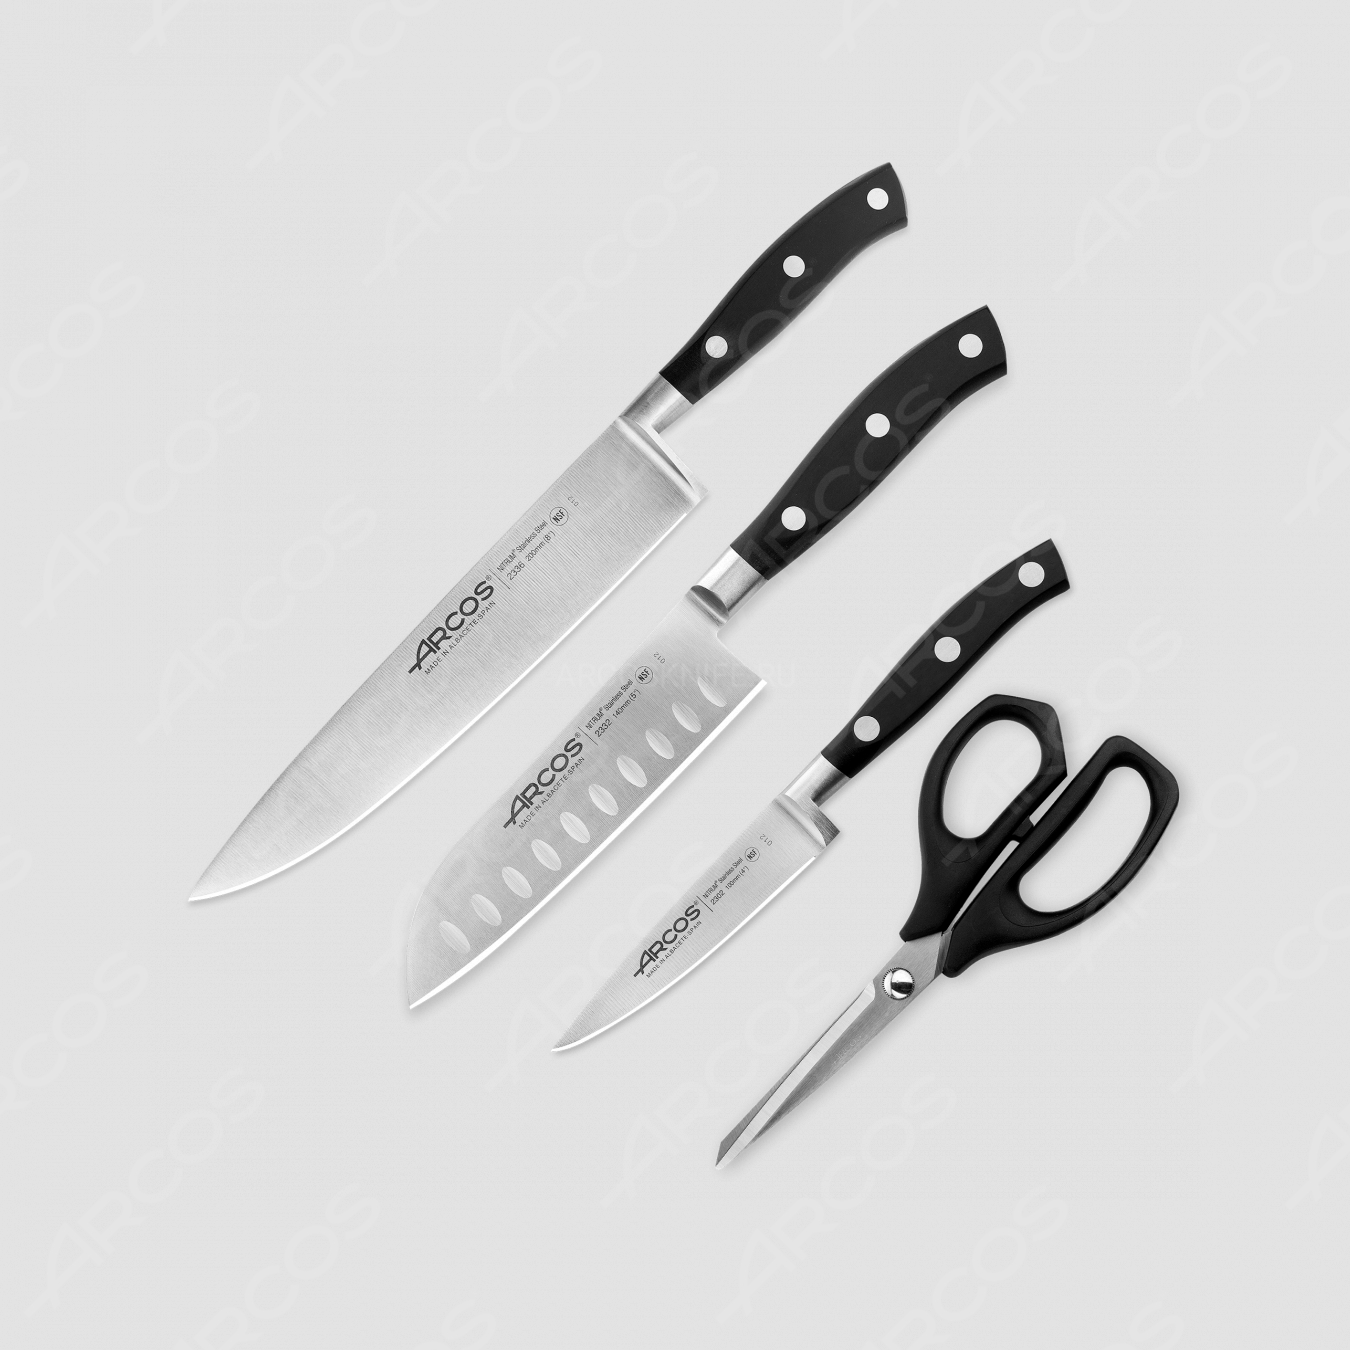 Набор кухонных ножей 3 шт (10 см, 14 см, 20 см,) ручки черные, серия Riviera, ARCOS, Испания